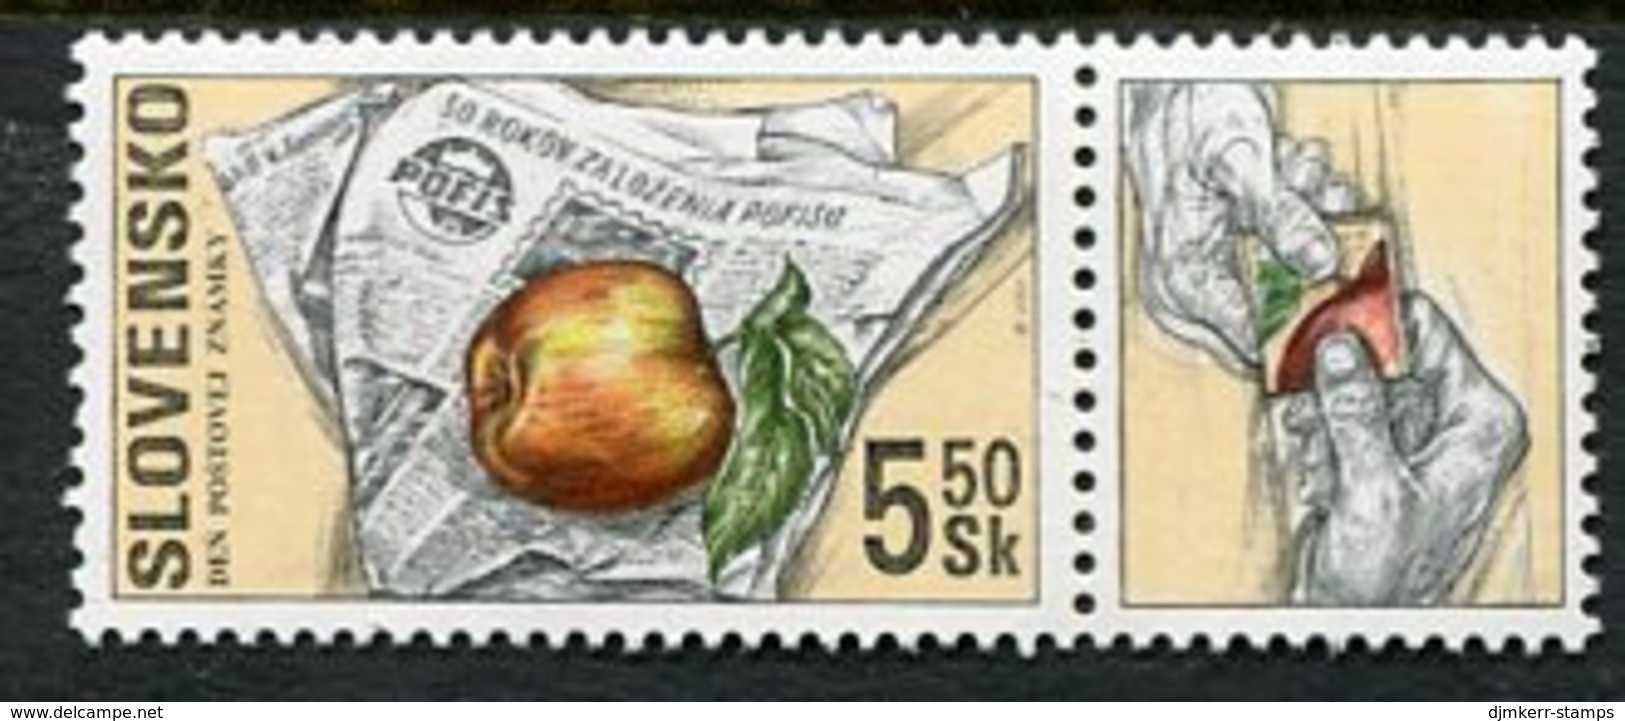 SLOVAKIA 2000 Stamp Day MNH / **  Michel 383 - Ungebraucht